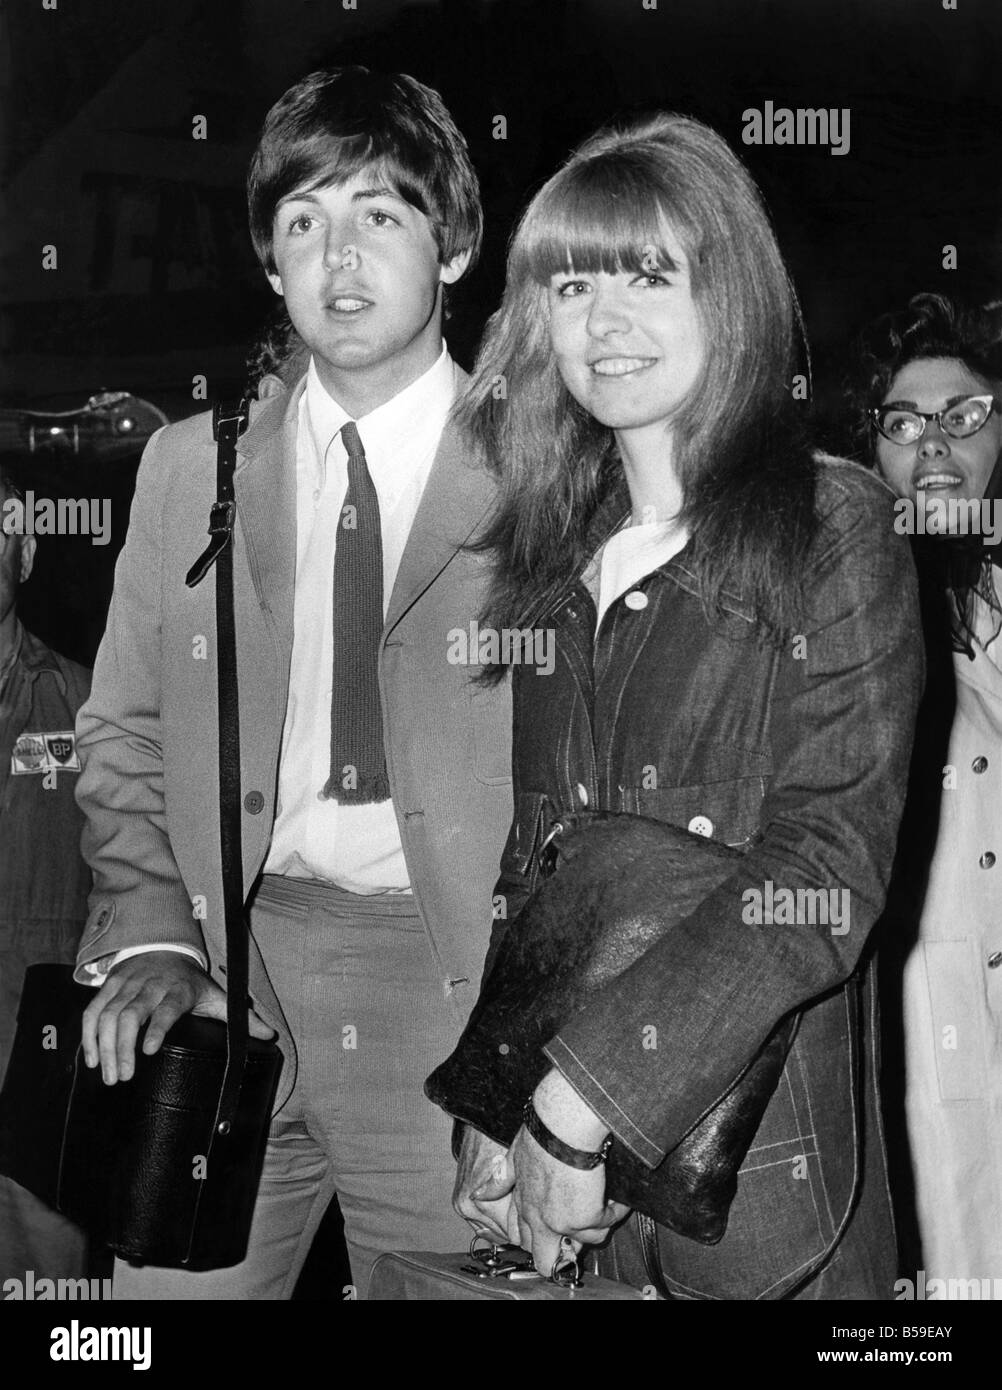 Grupo pop de los Beatles guitarrista y cantante Paul McCartney y Jane ...